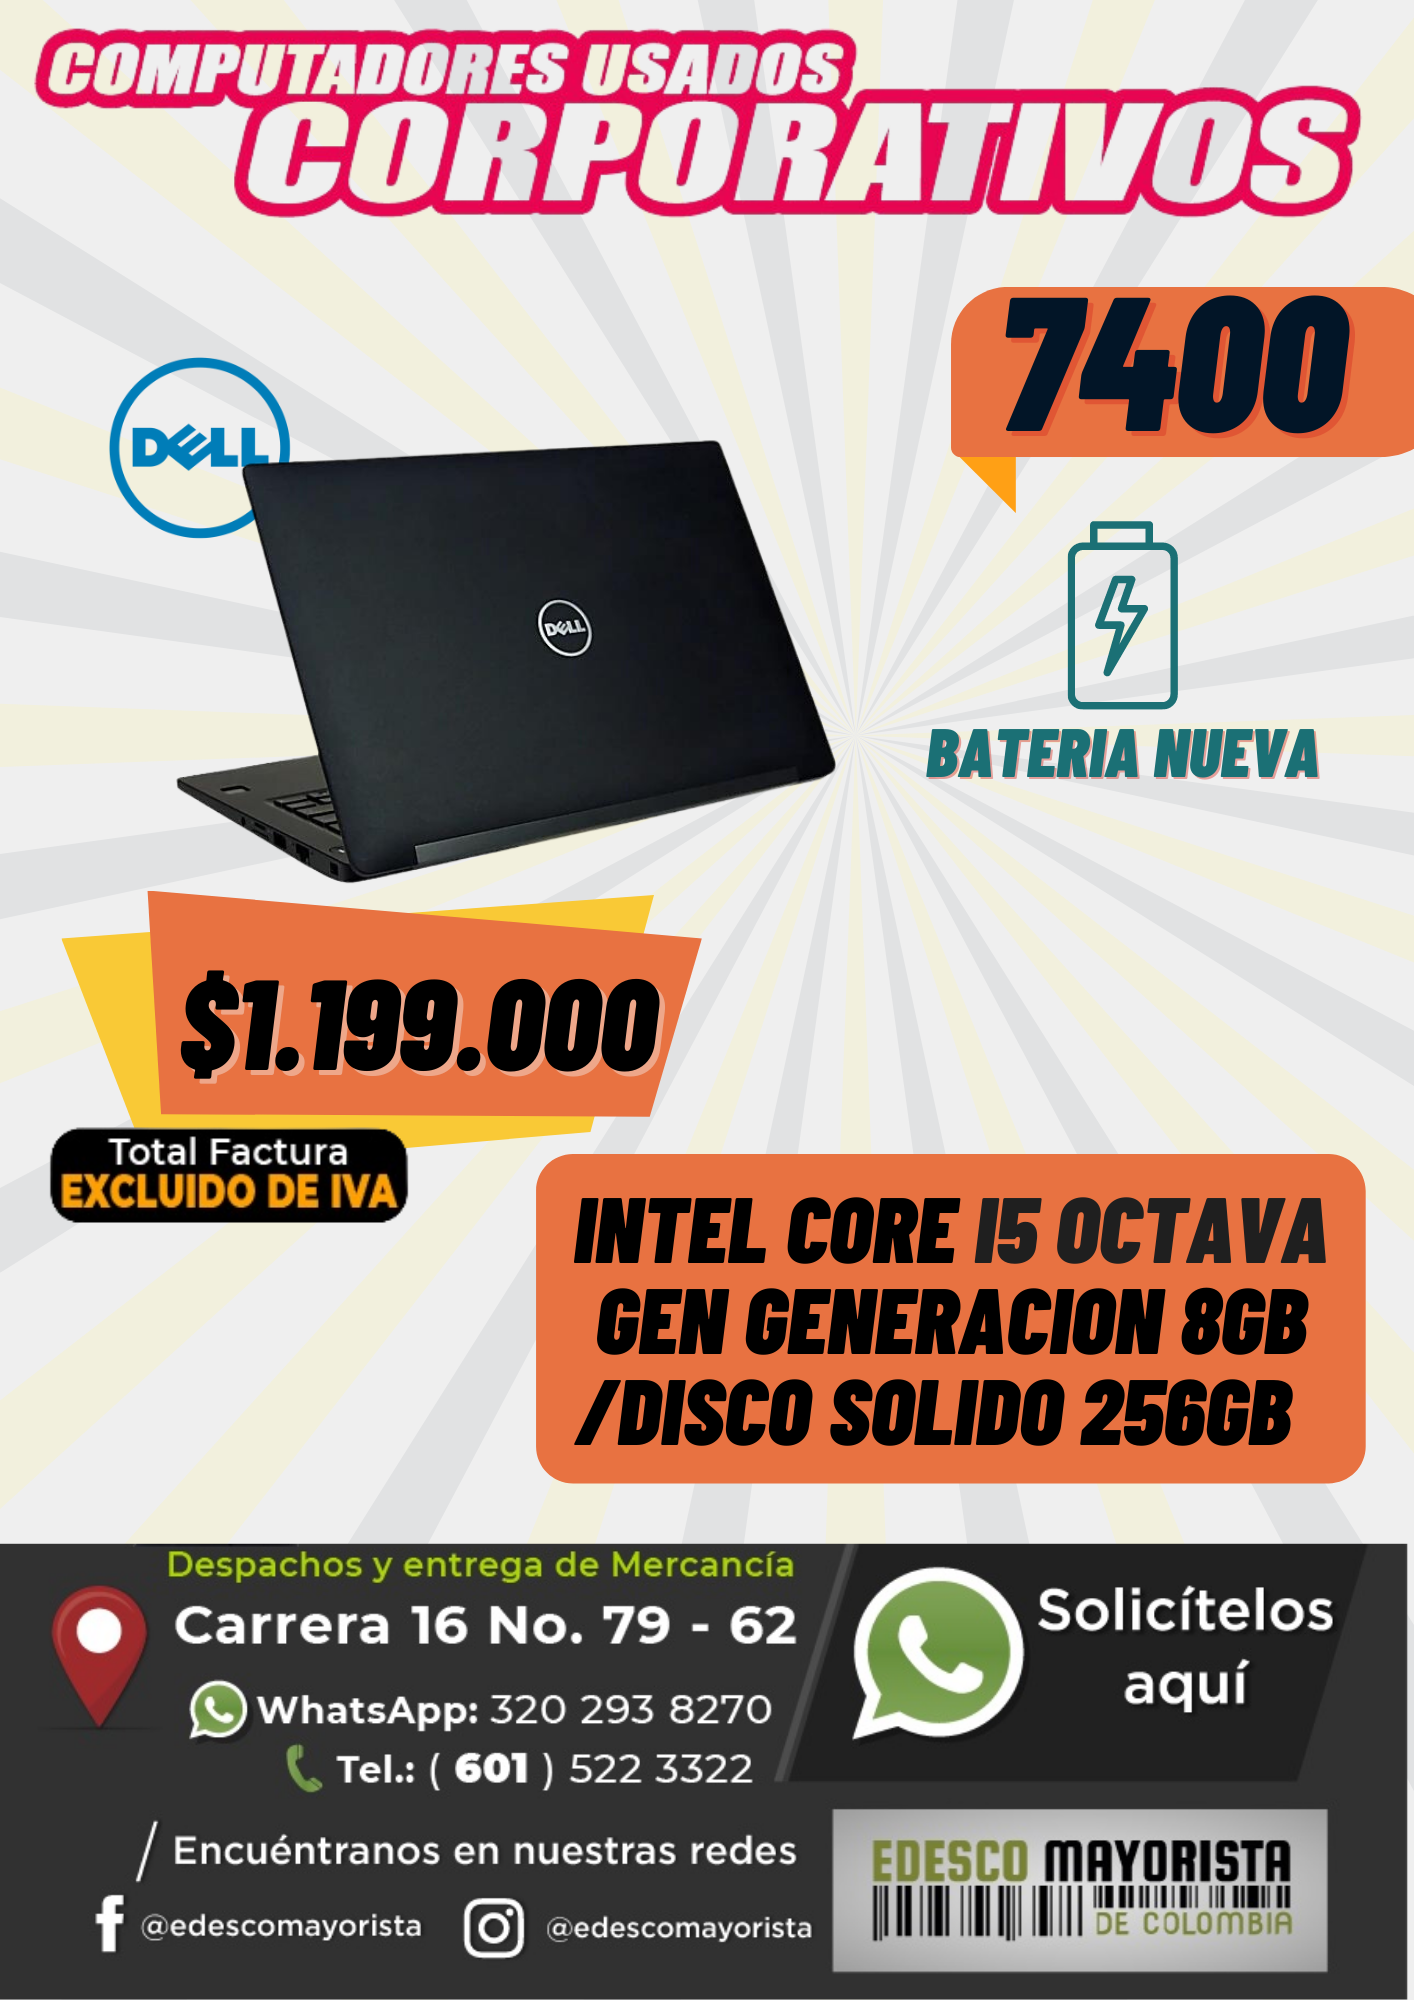 Dell 7400 I5 Pila nueva